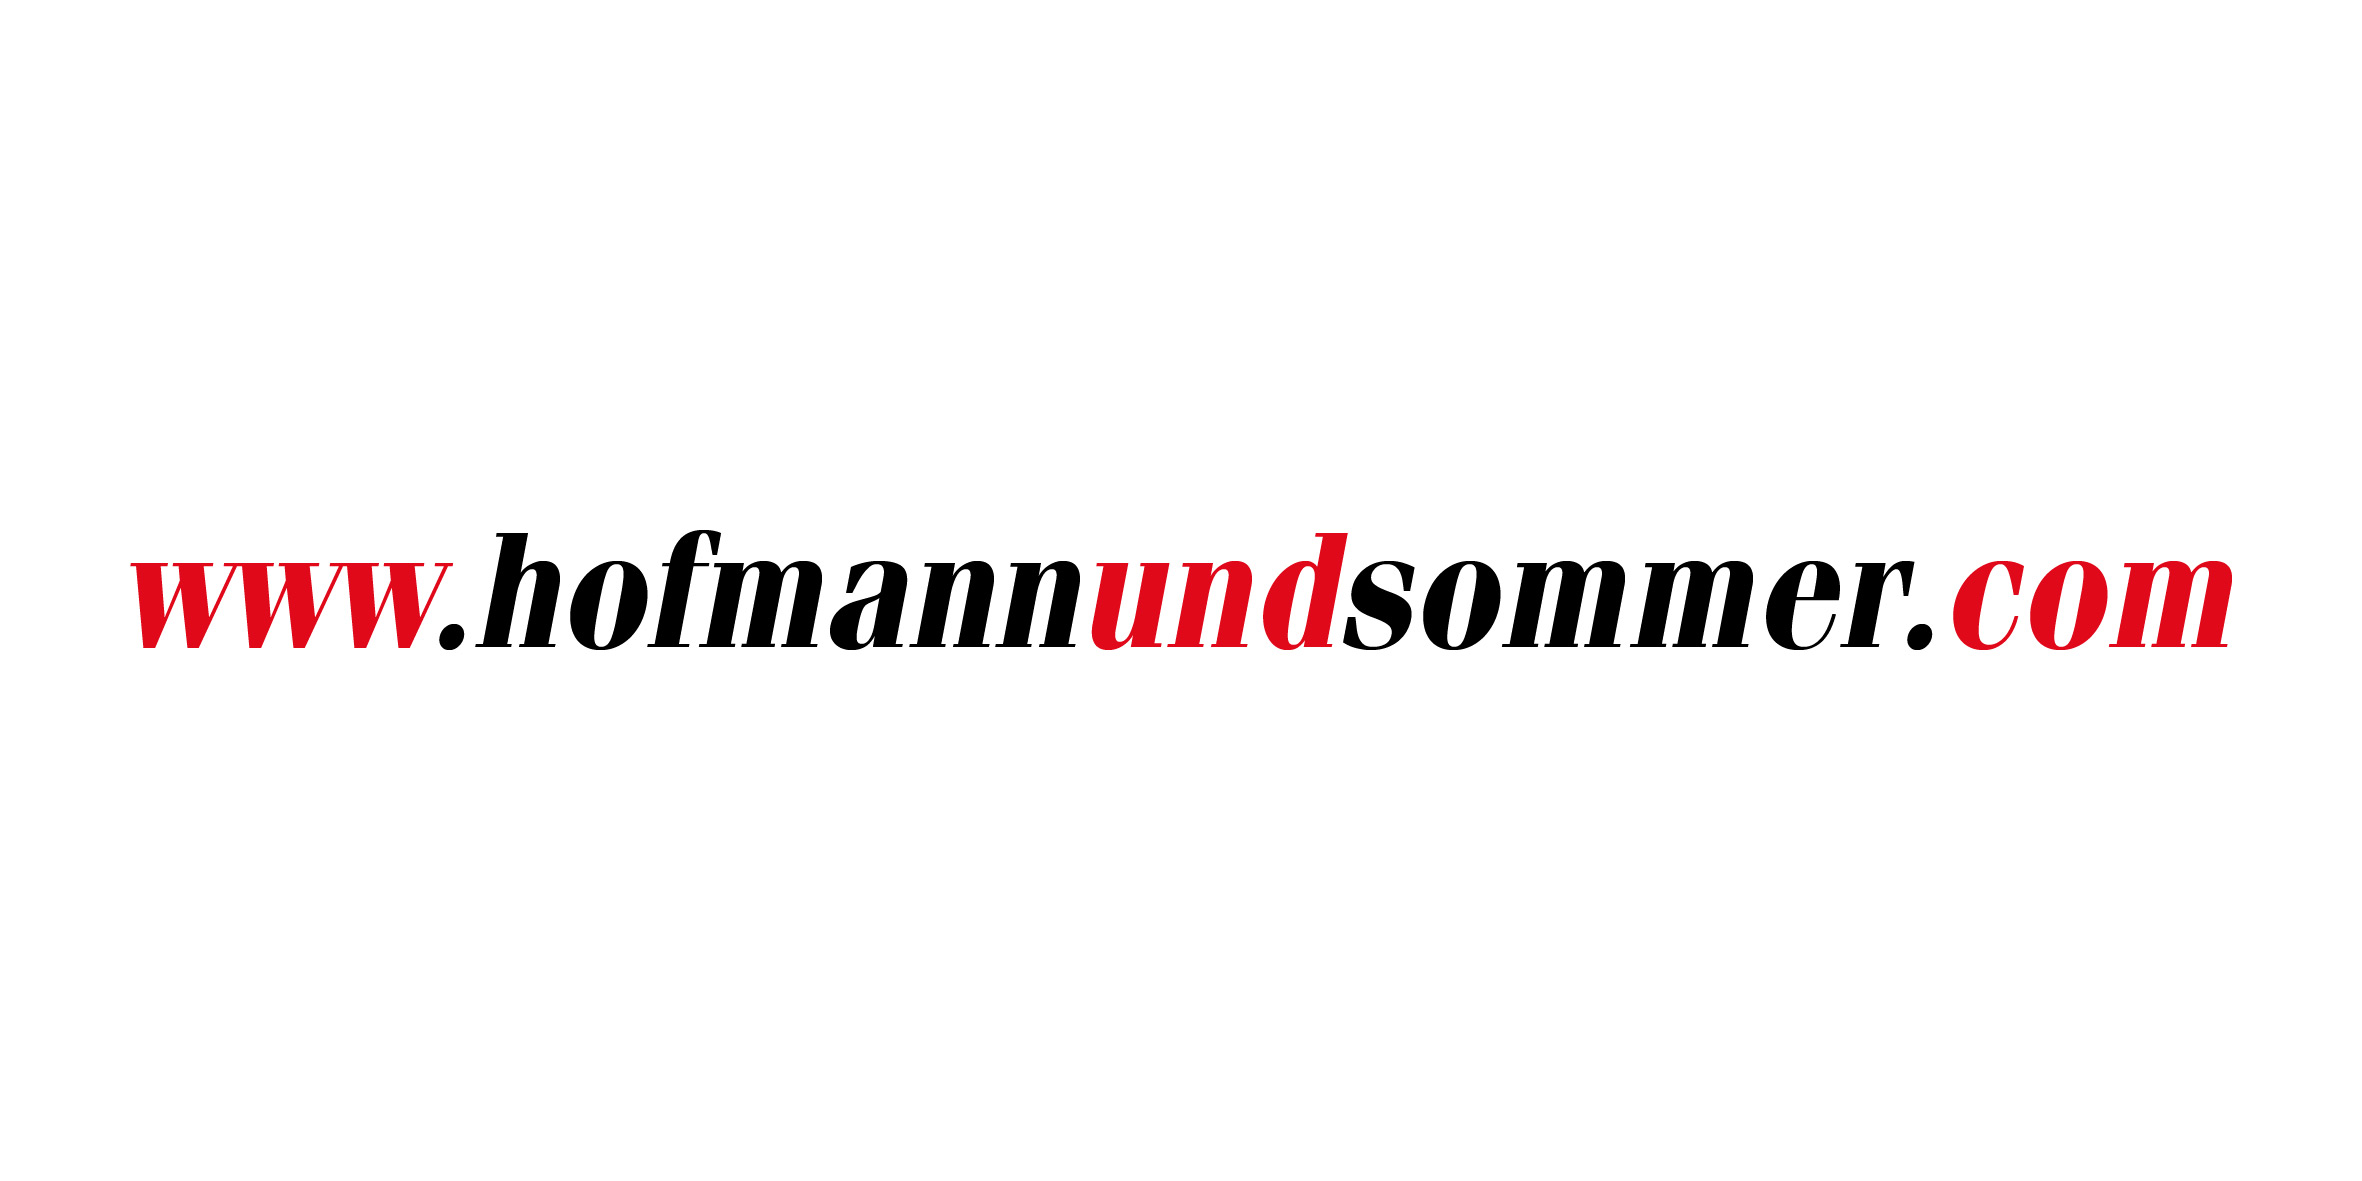 Domain of the website Hofmann & Sommer dotcom